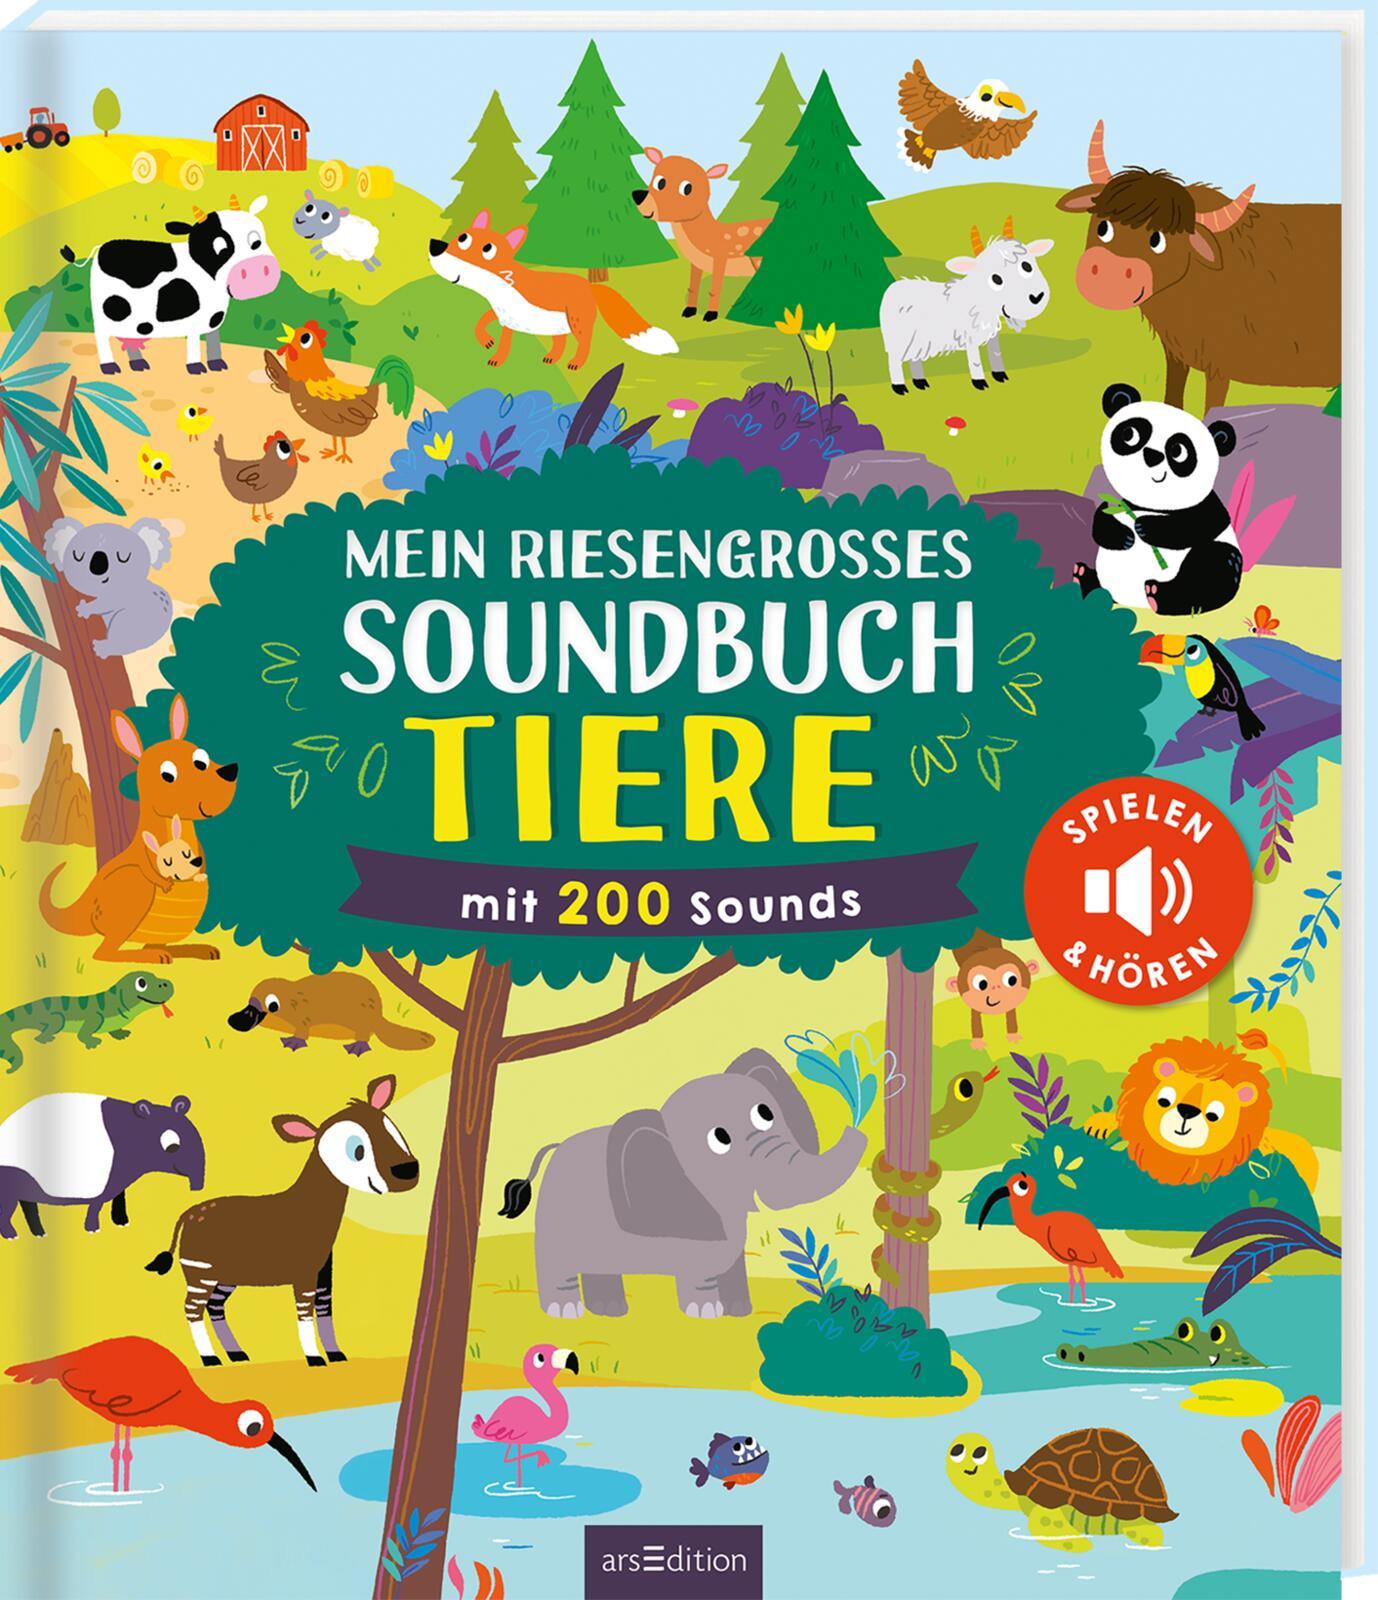 Knjiga Mein riesengroßes Soundbuch Tiere 